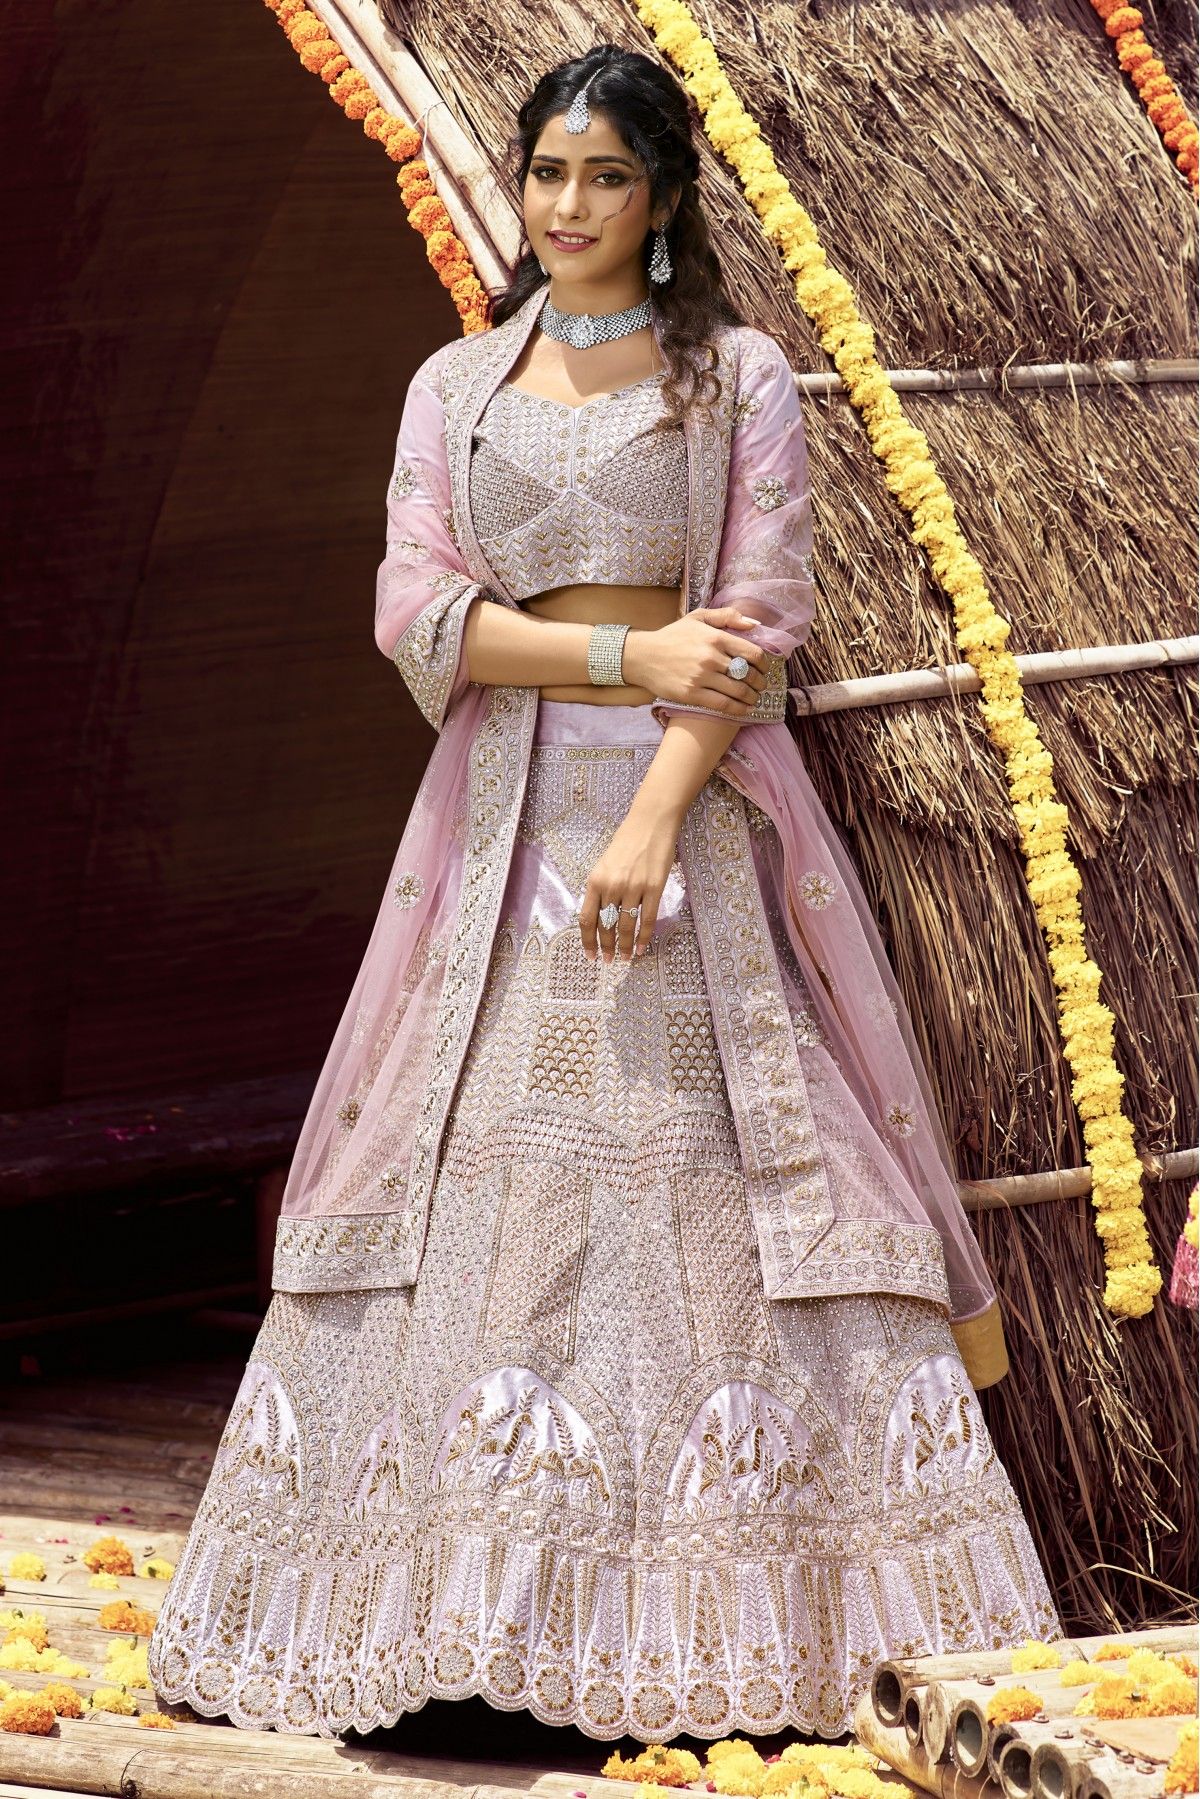 Indian Bridal Lehenga Choli With Heavy Embroidery - Etsy